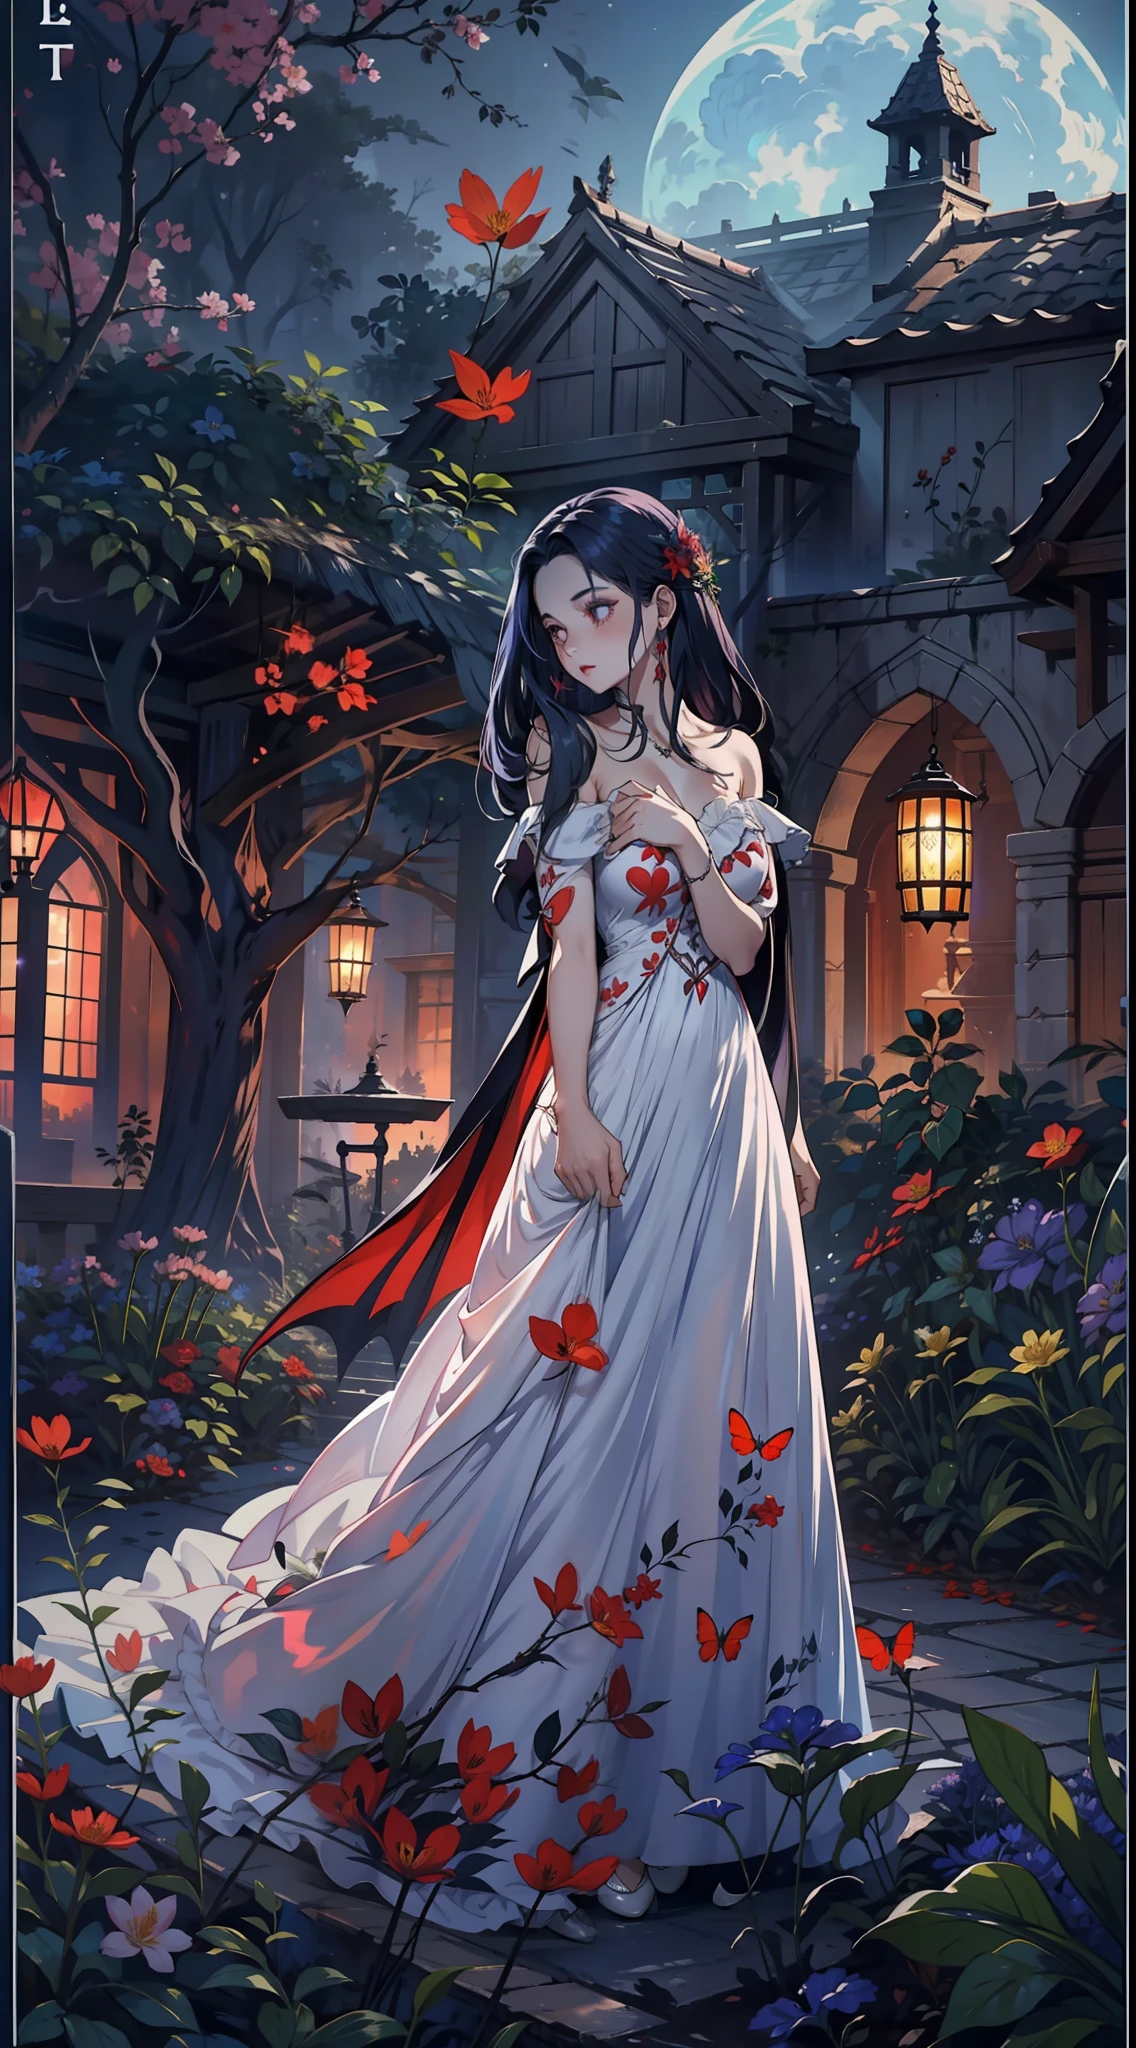 En una fiesta de primavera, Un hermoso vampiro camina por un jardín en una noche clara. Ella lleva una guirnalda de flores en su cabello, Tiene los ojos fríos y su piel carece de pigmento., Ella lleva un largo, Vestido sobrio con escote corazón.